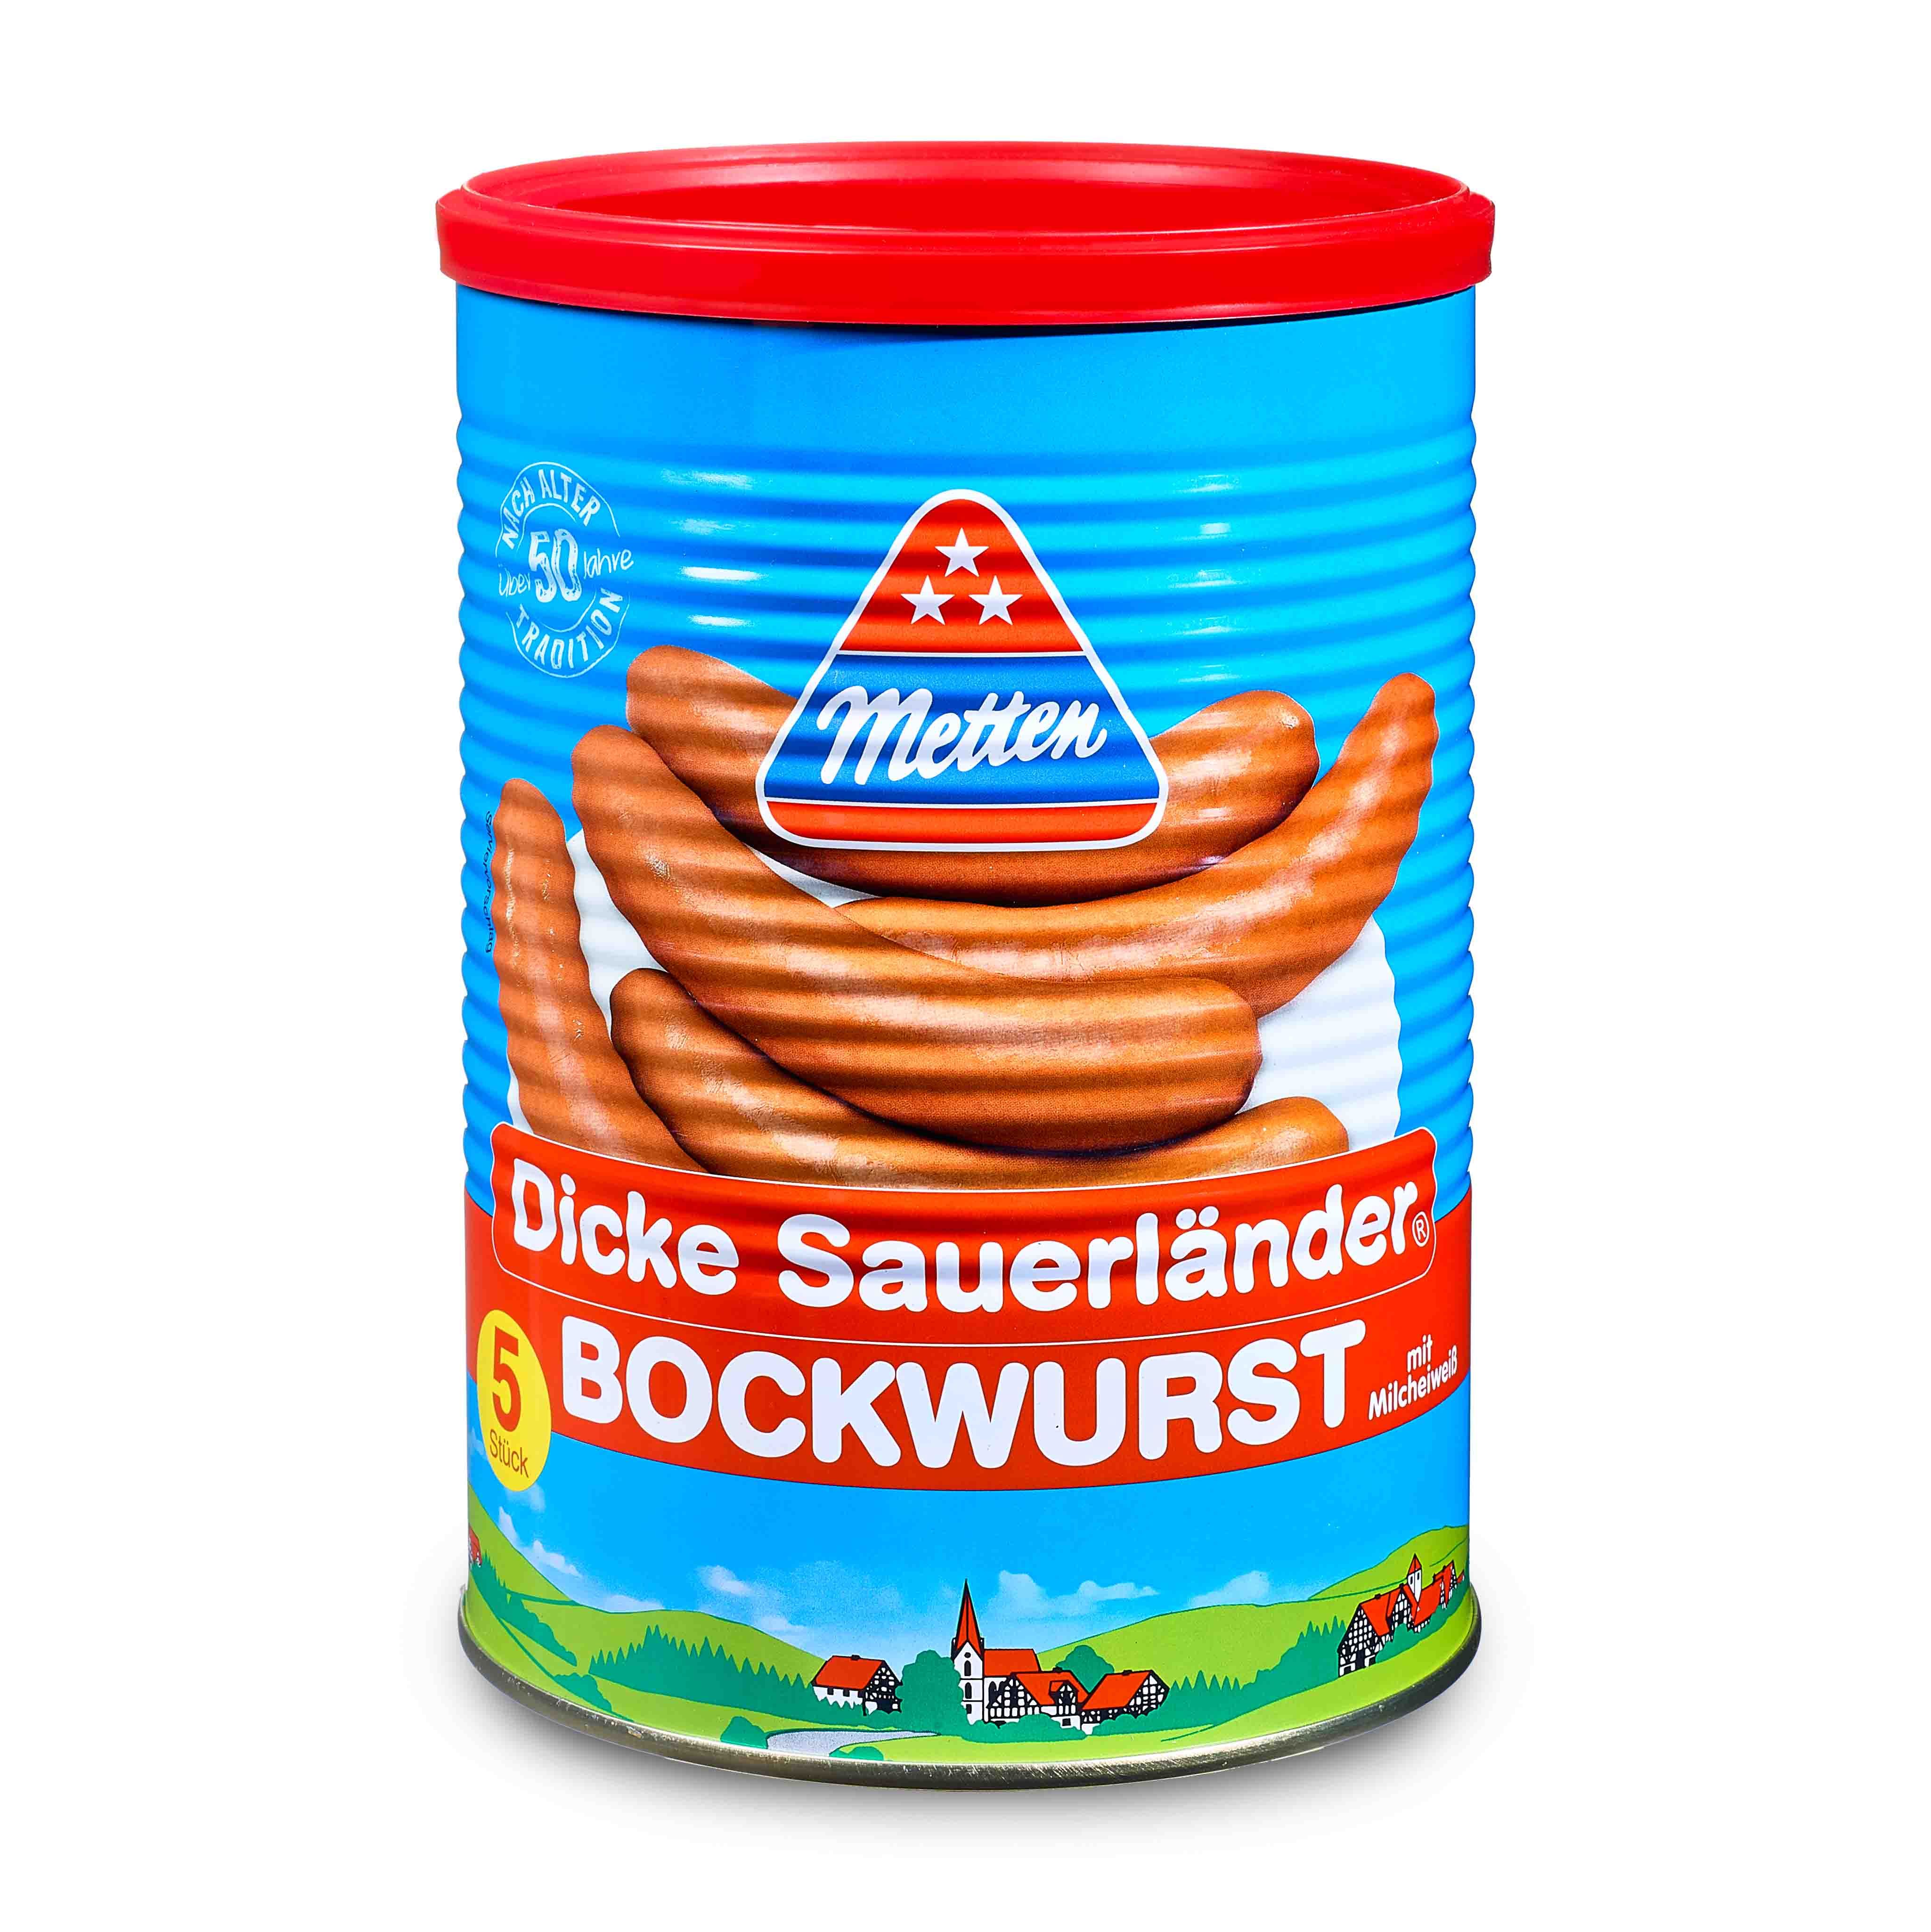 "Dicke Sauerländer" Bockwurst 5x100g von Metten